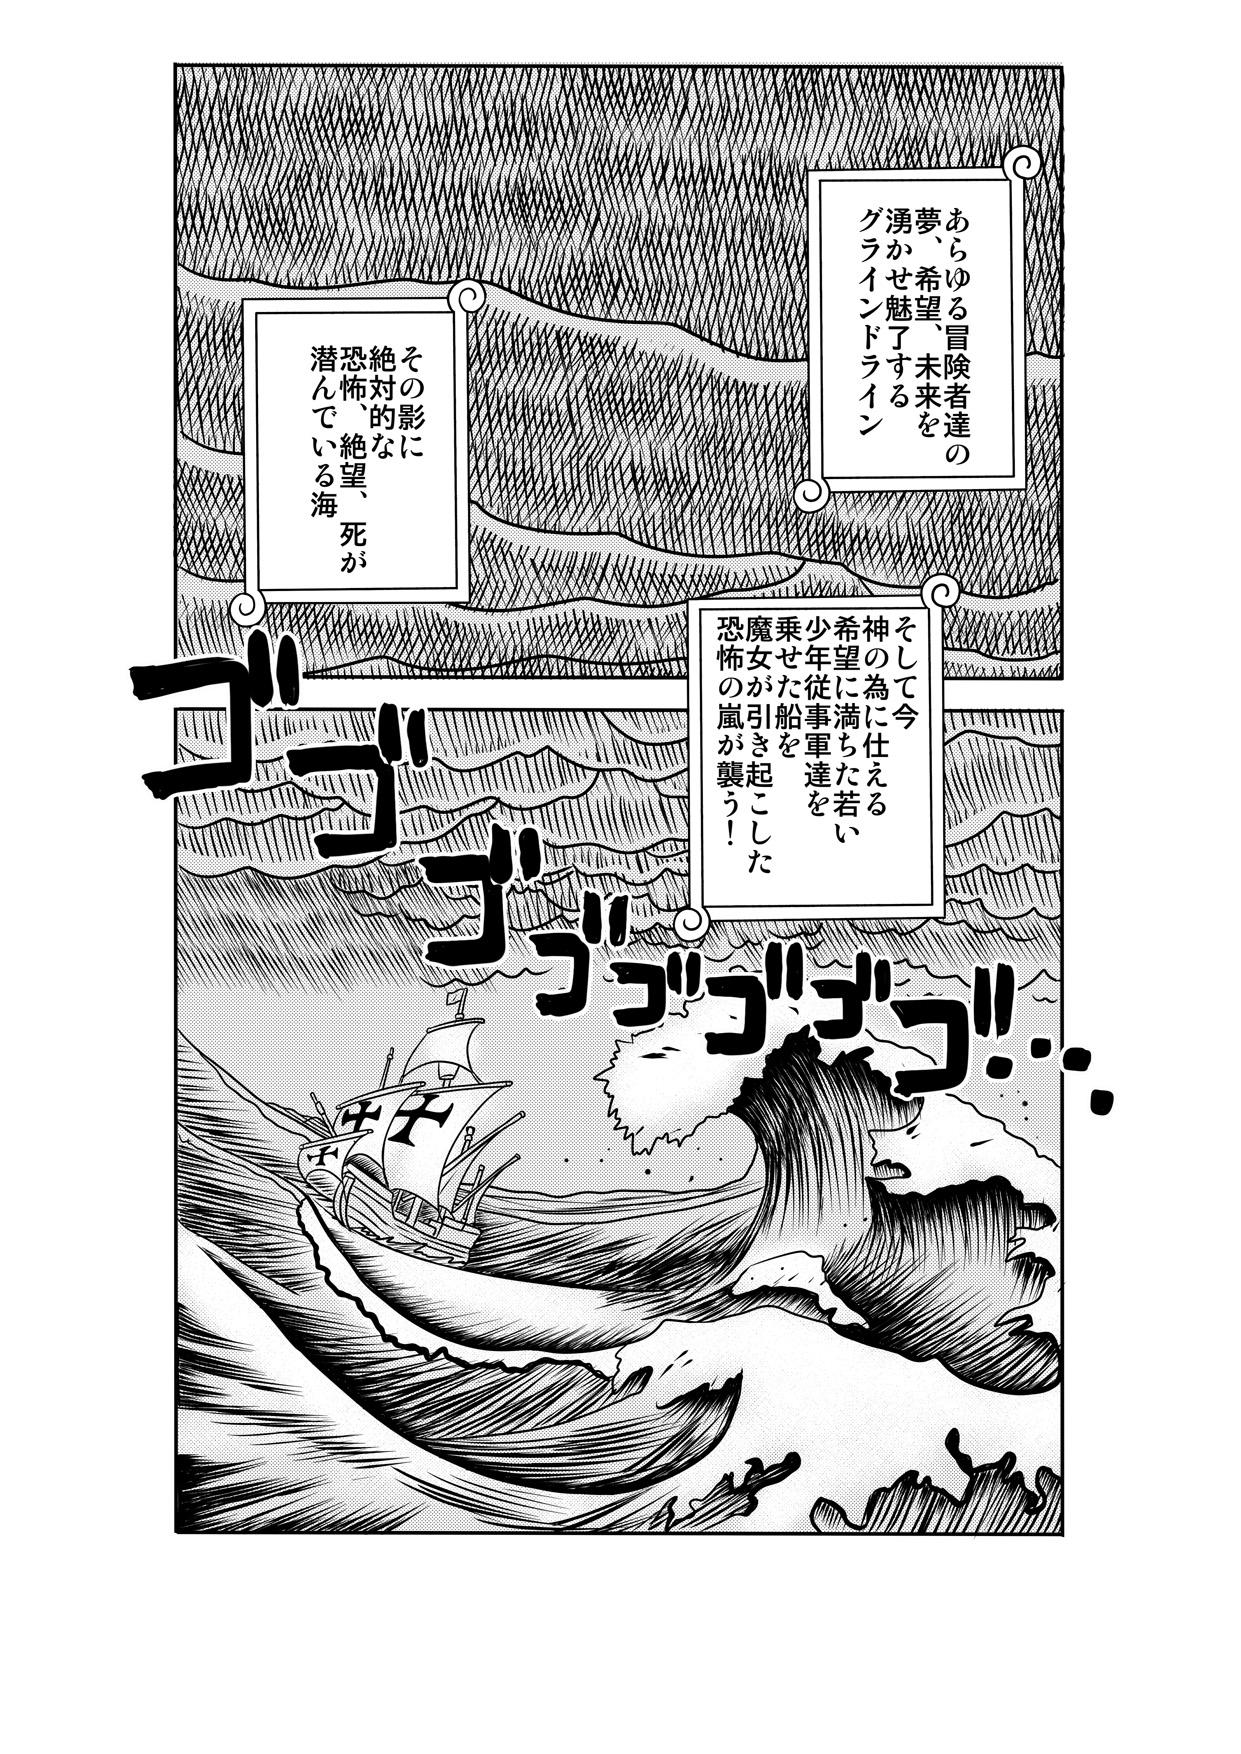 Pussy Sex "Nukinuki no Mi" no Nouryokusha 2 - Seishounen Juujigun Hen - One piece Semen - Page 2